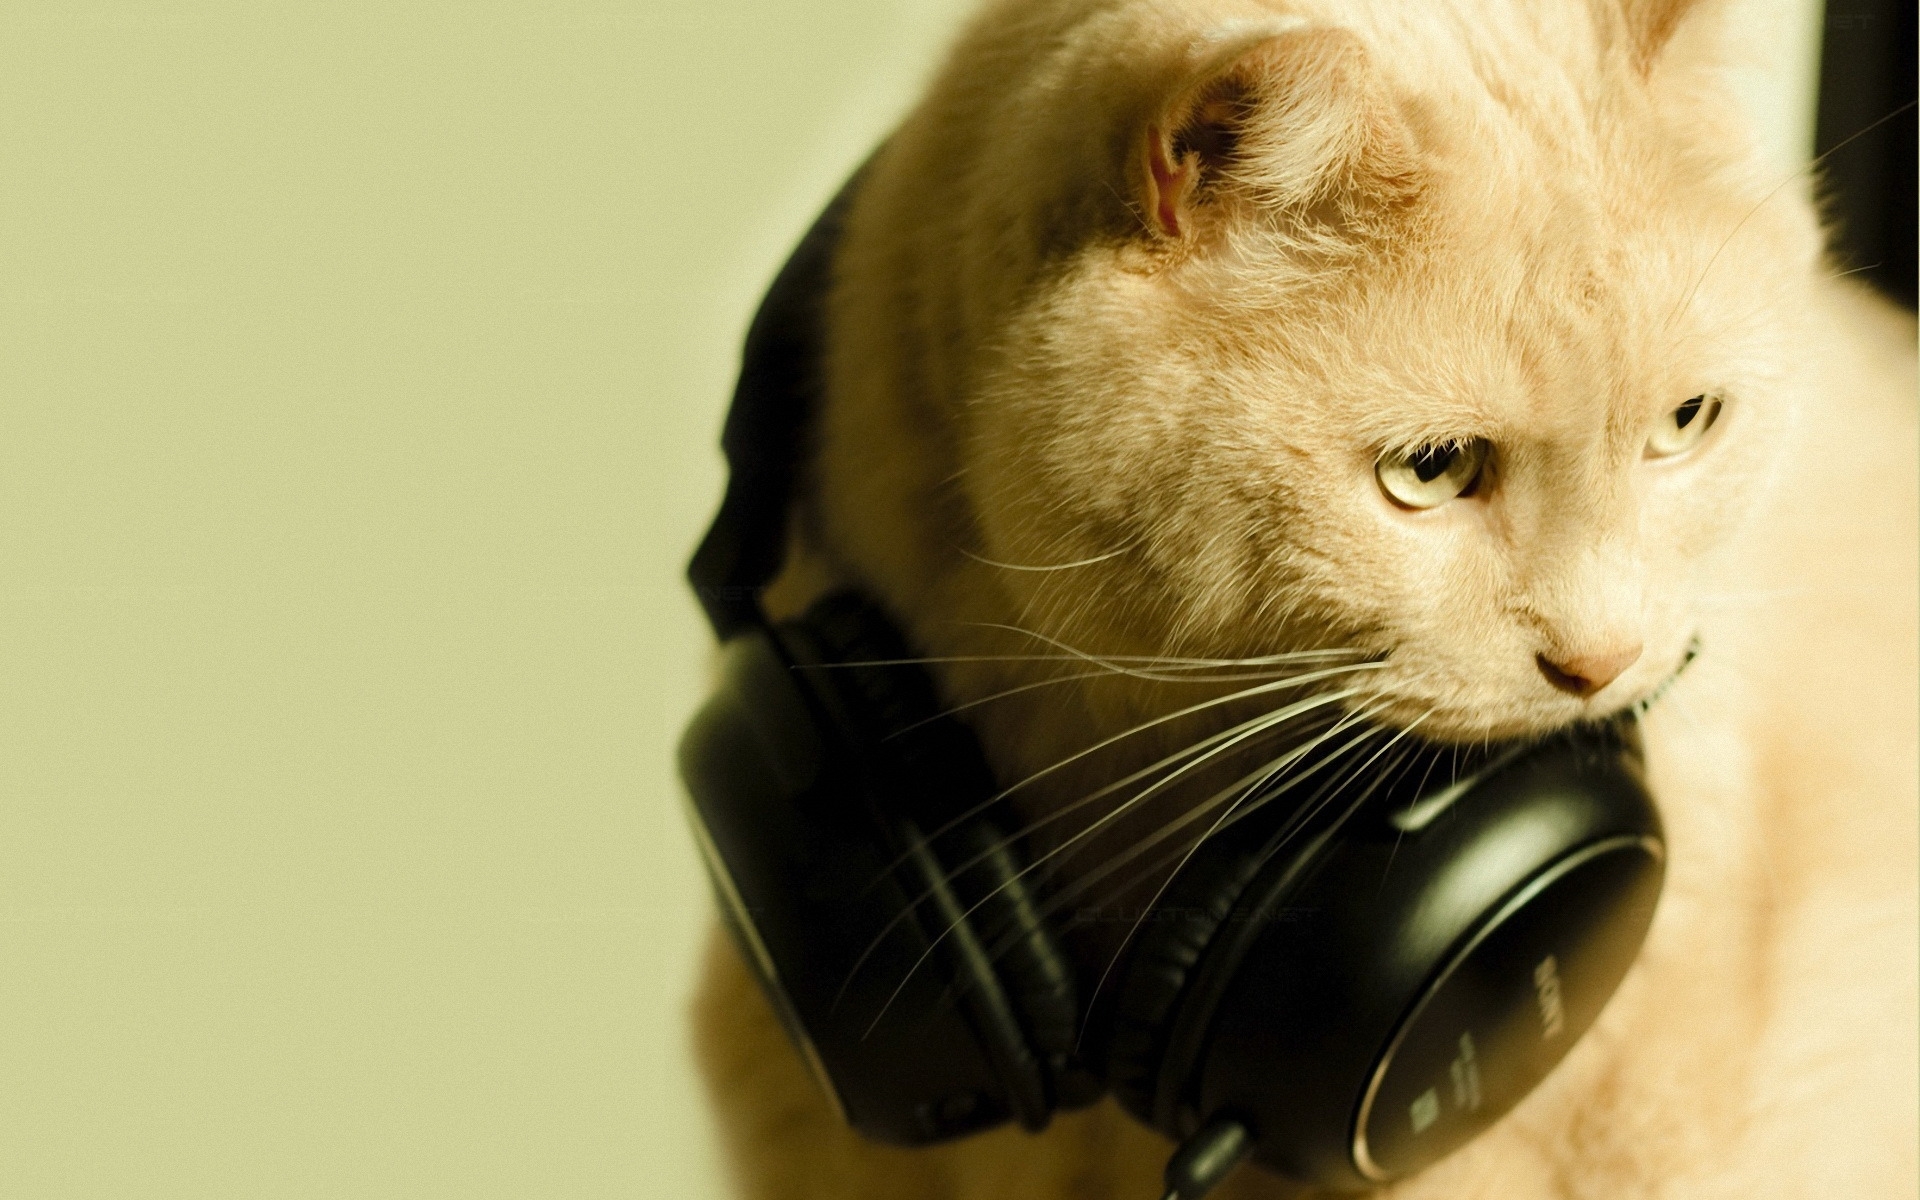 Скачать обои бесплатно Животные, Кошки (Коты Котики), Музыка картинка на рабочий стол ПК